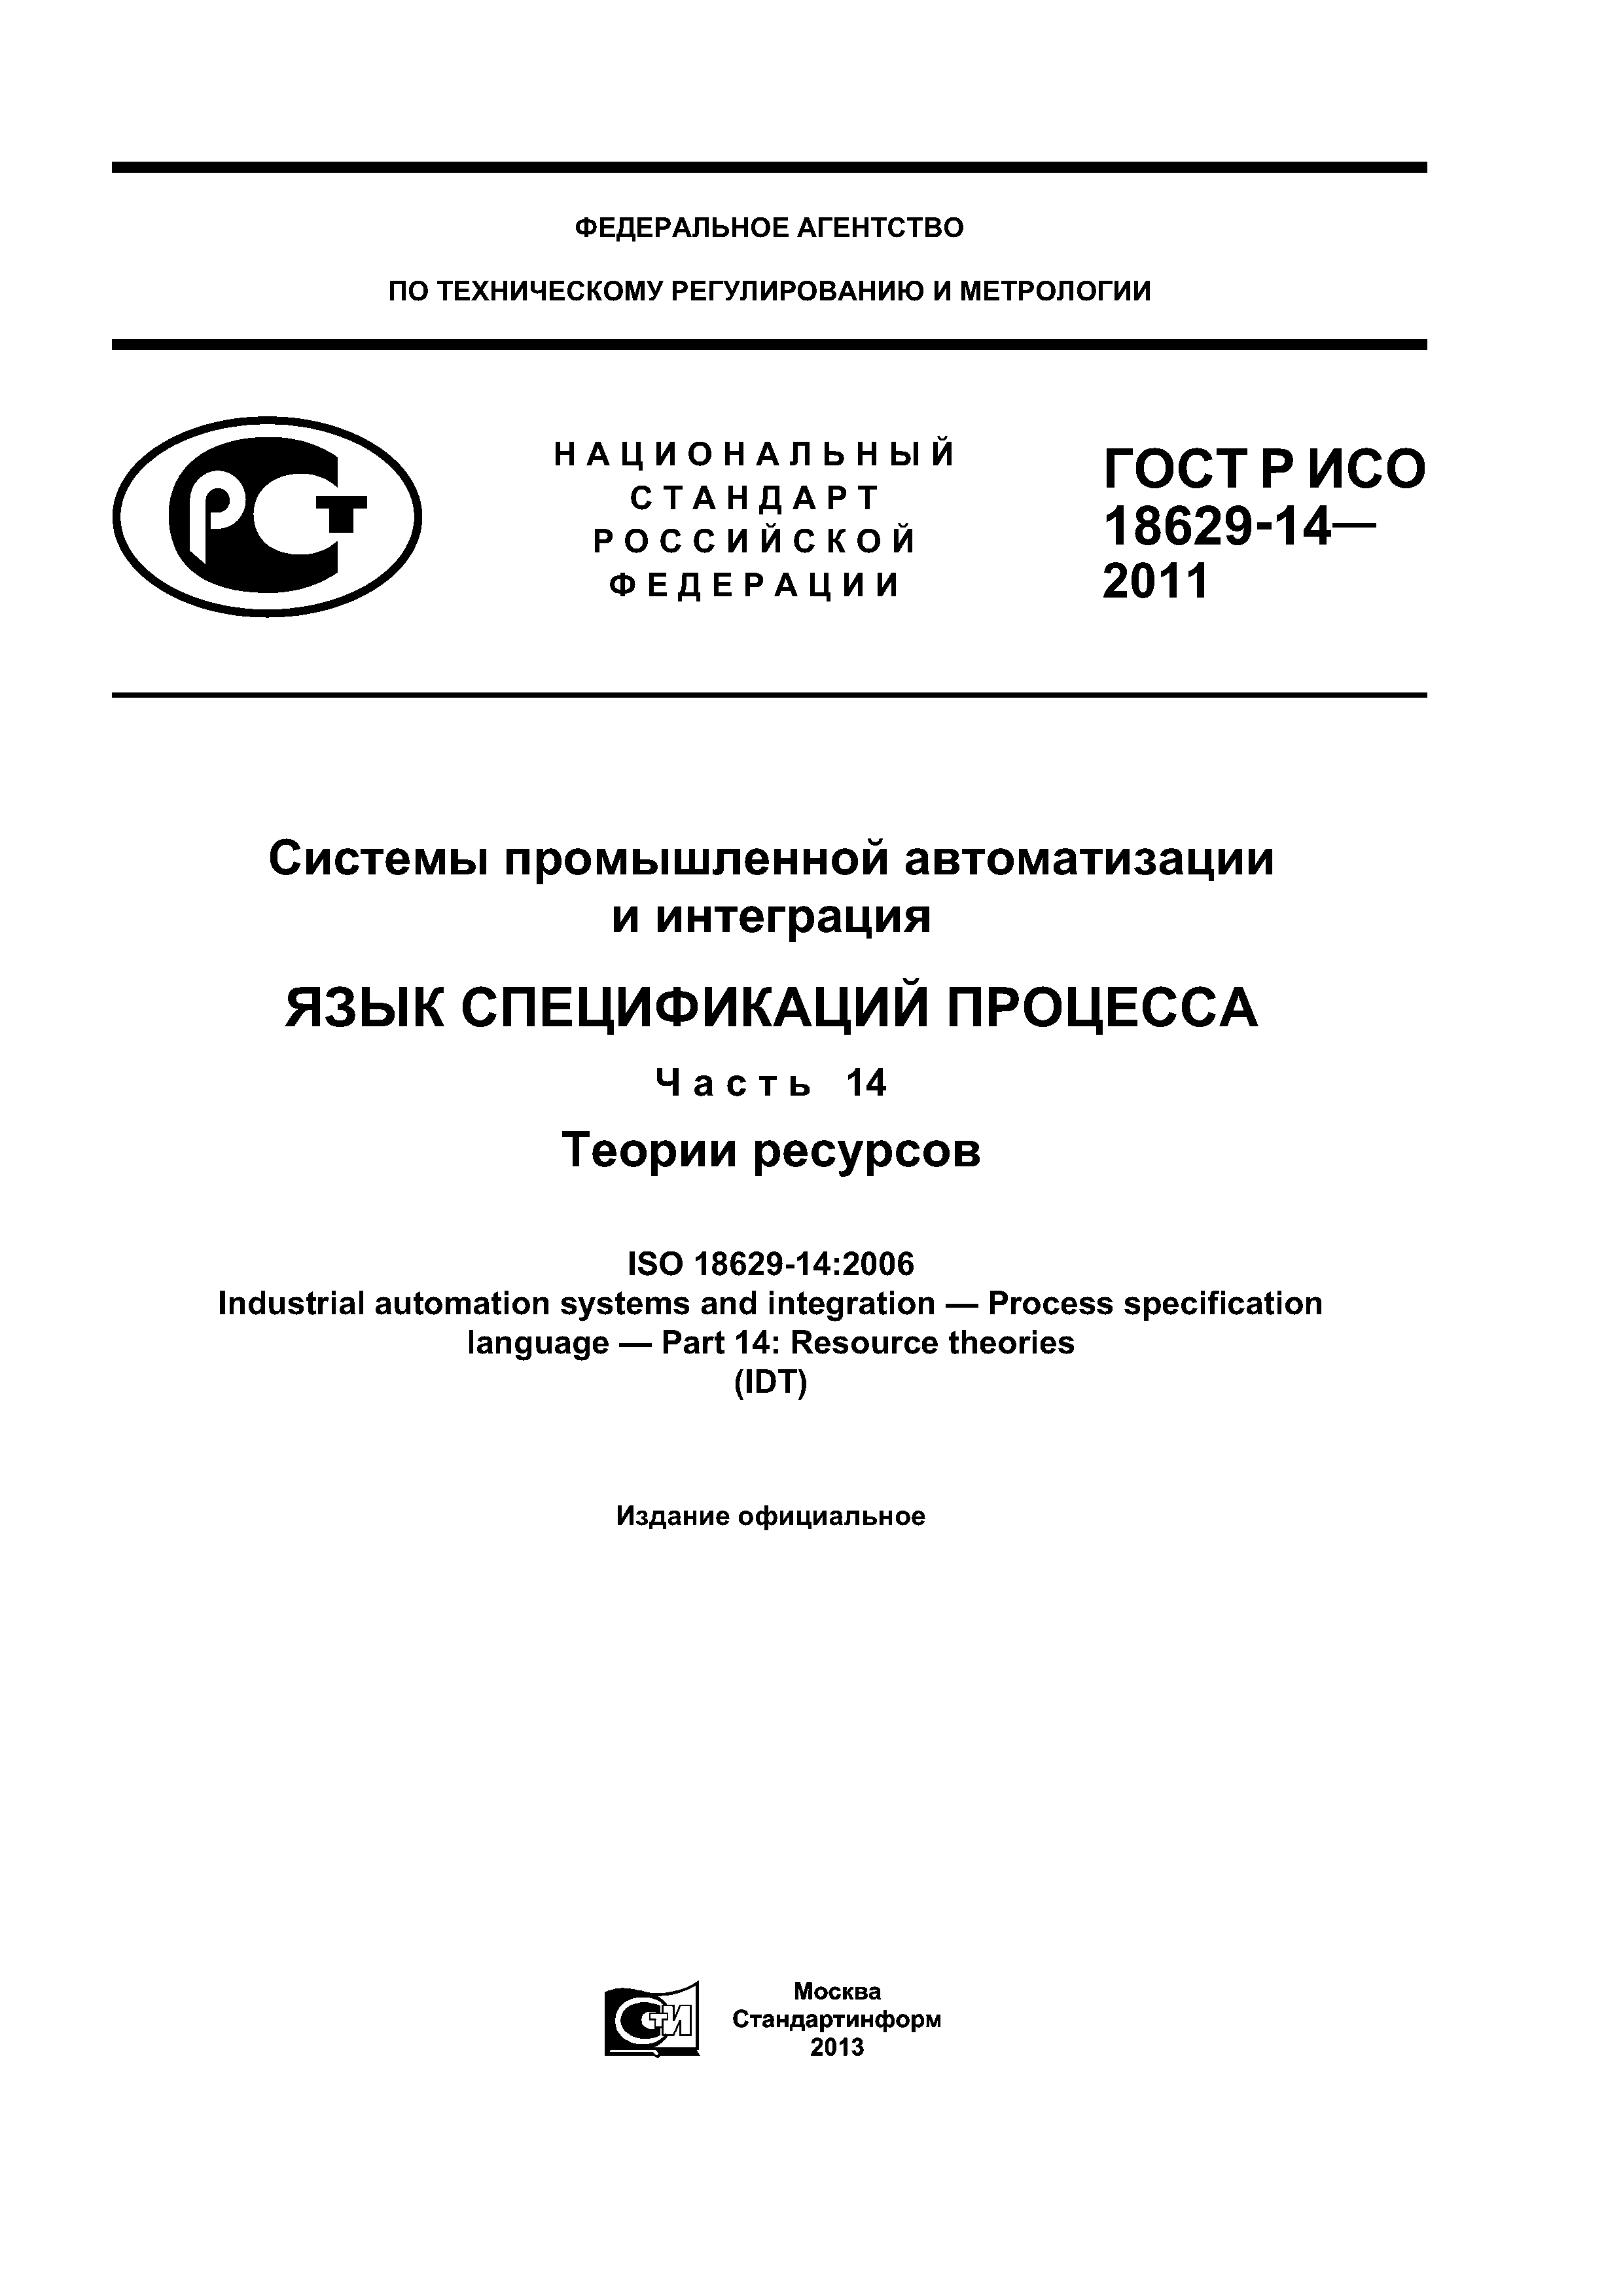 ГОСТ Р ИСО 18629-14-2011